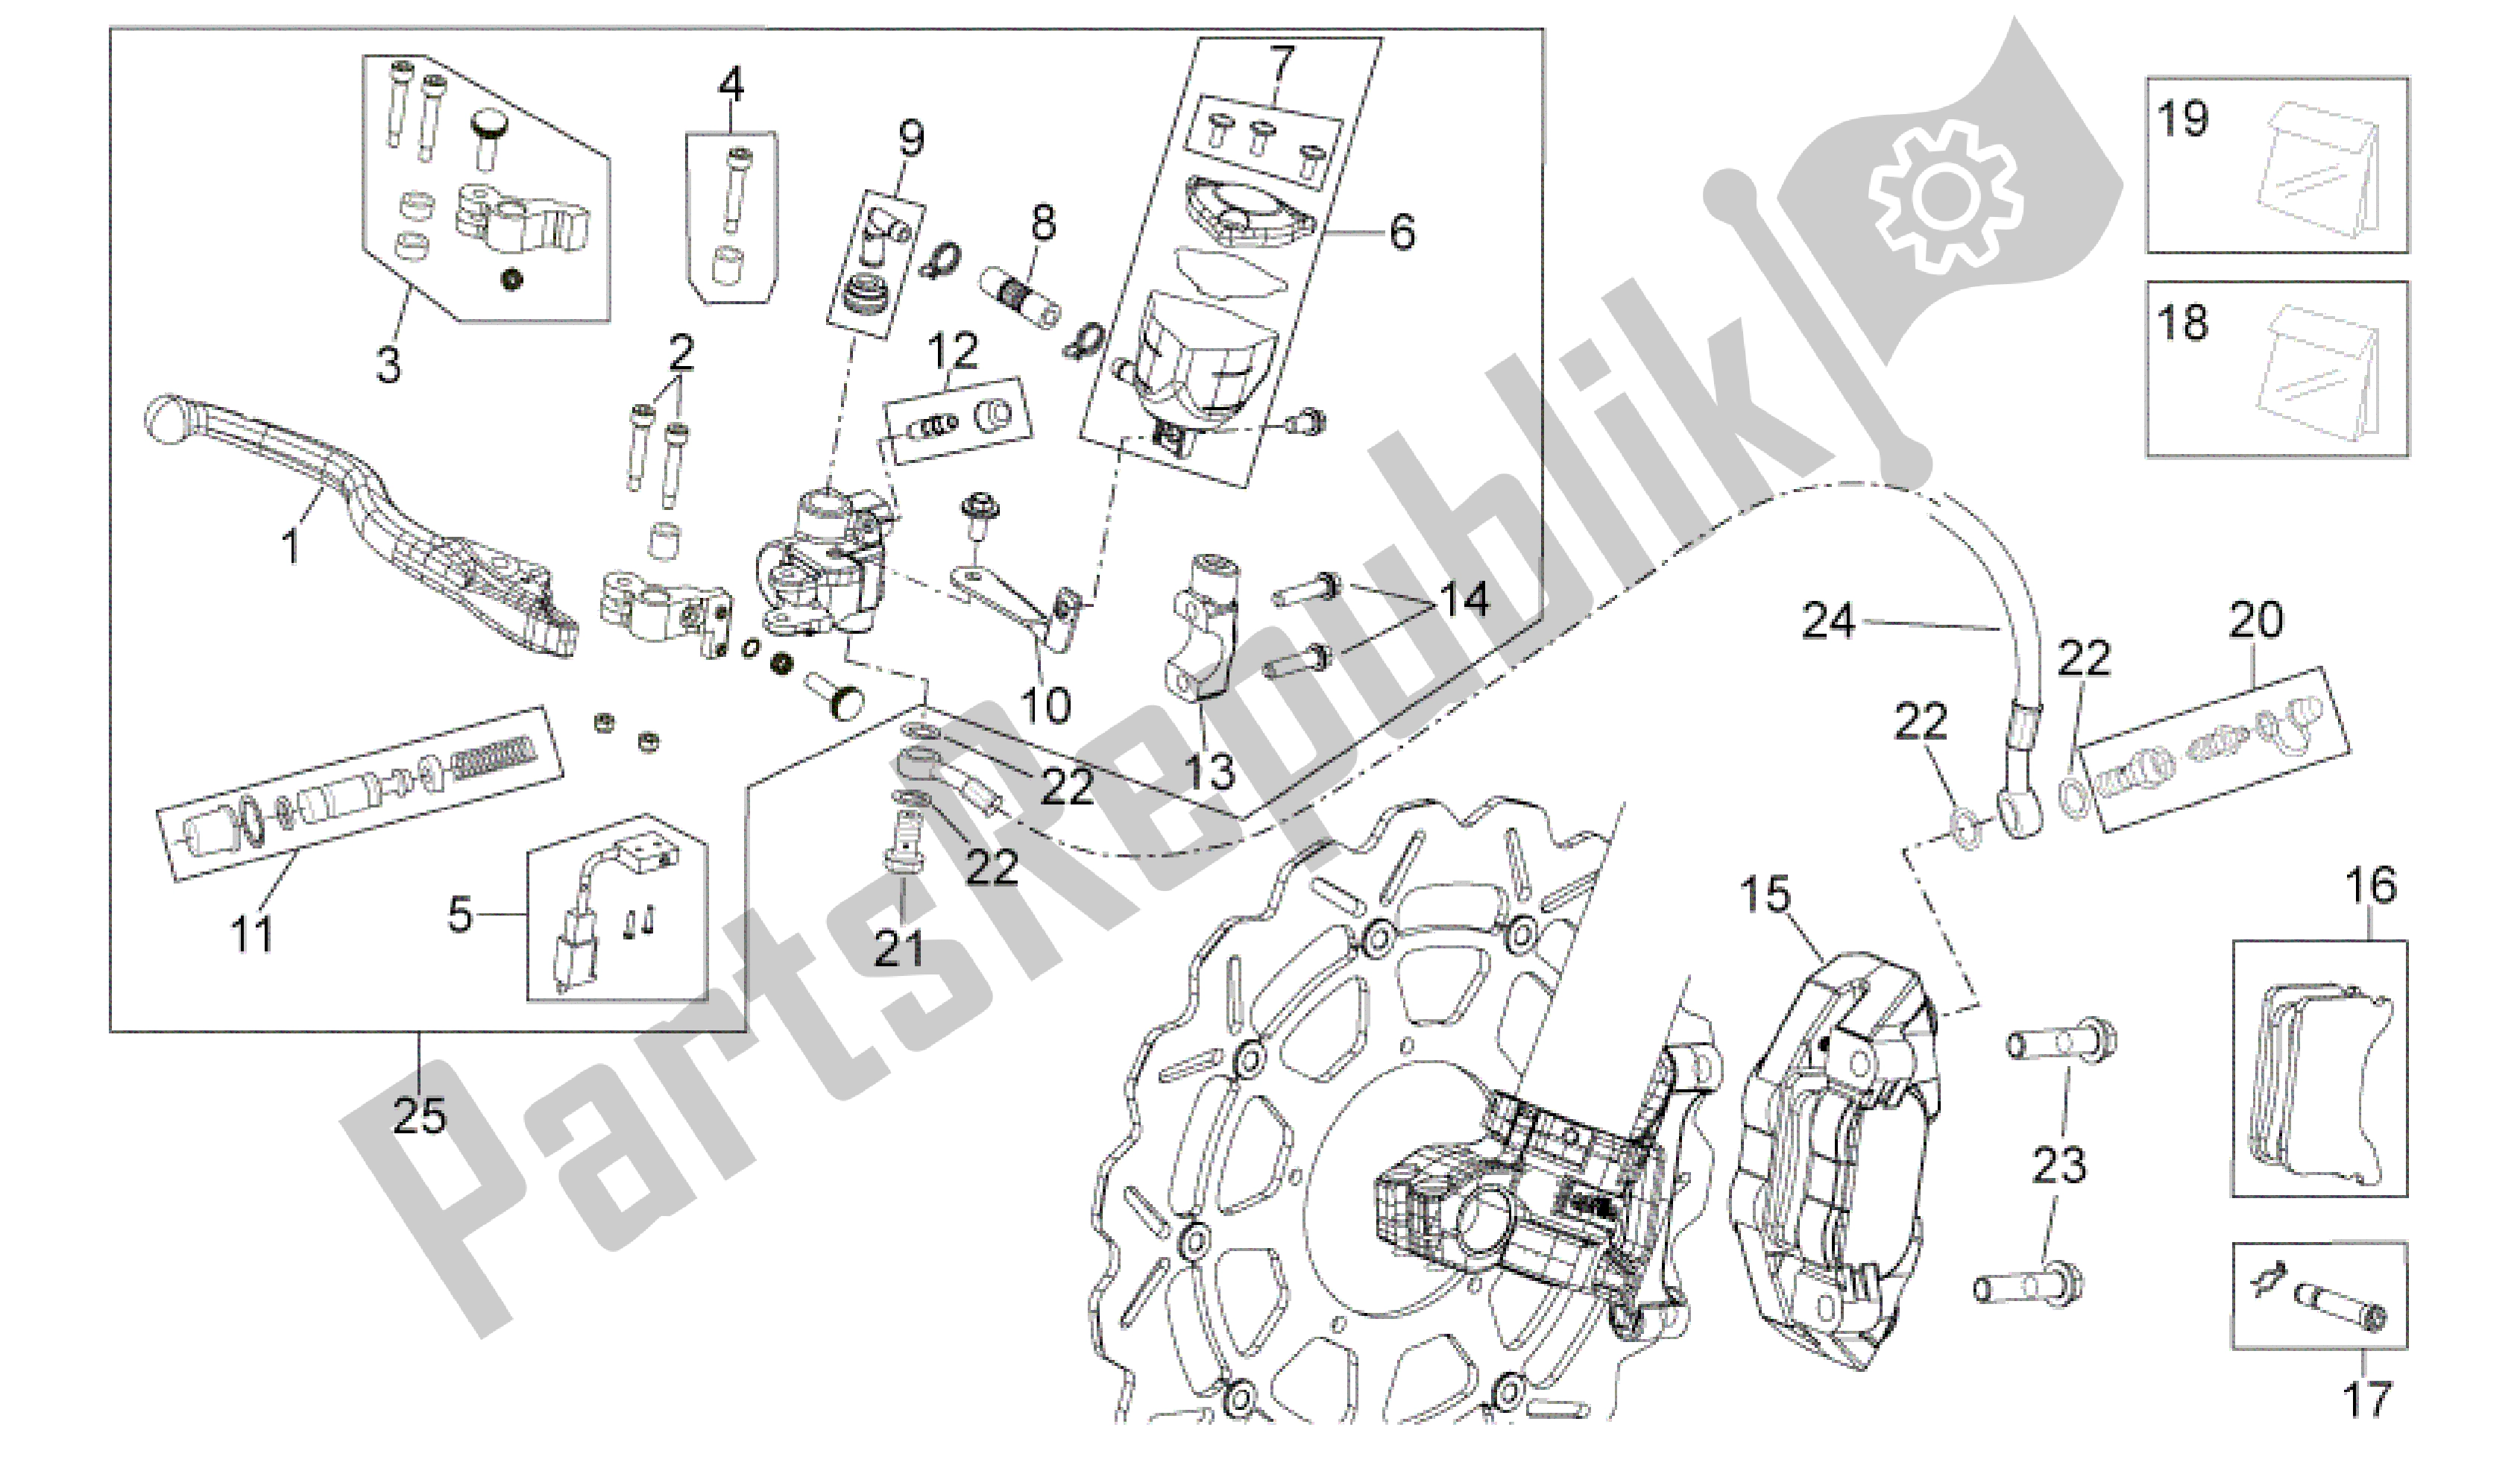 Alle onderdelen voor de Voorremsysteem van de Aprilia SXV 550 2009 - 2011